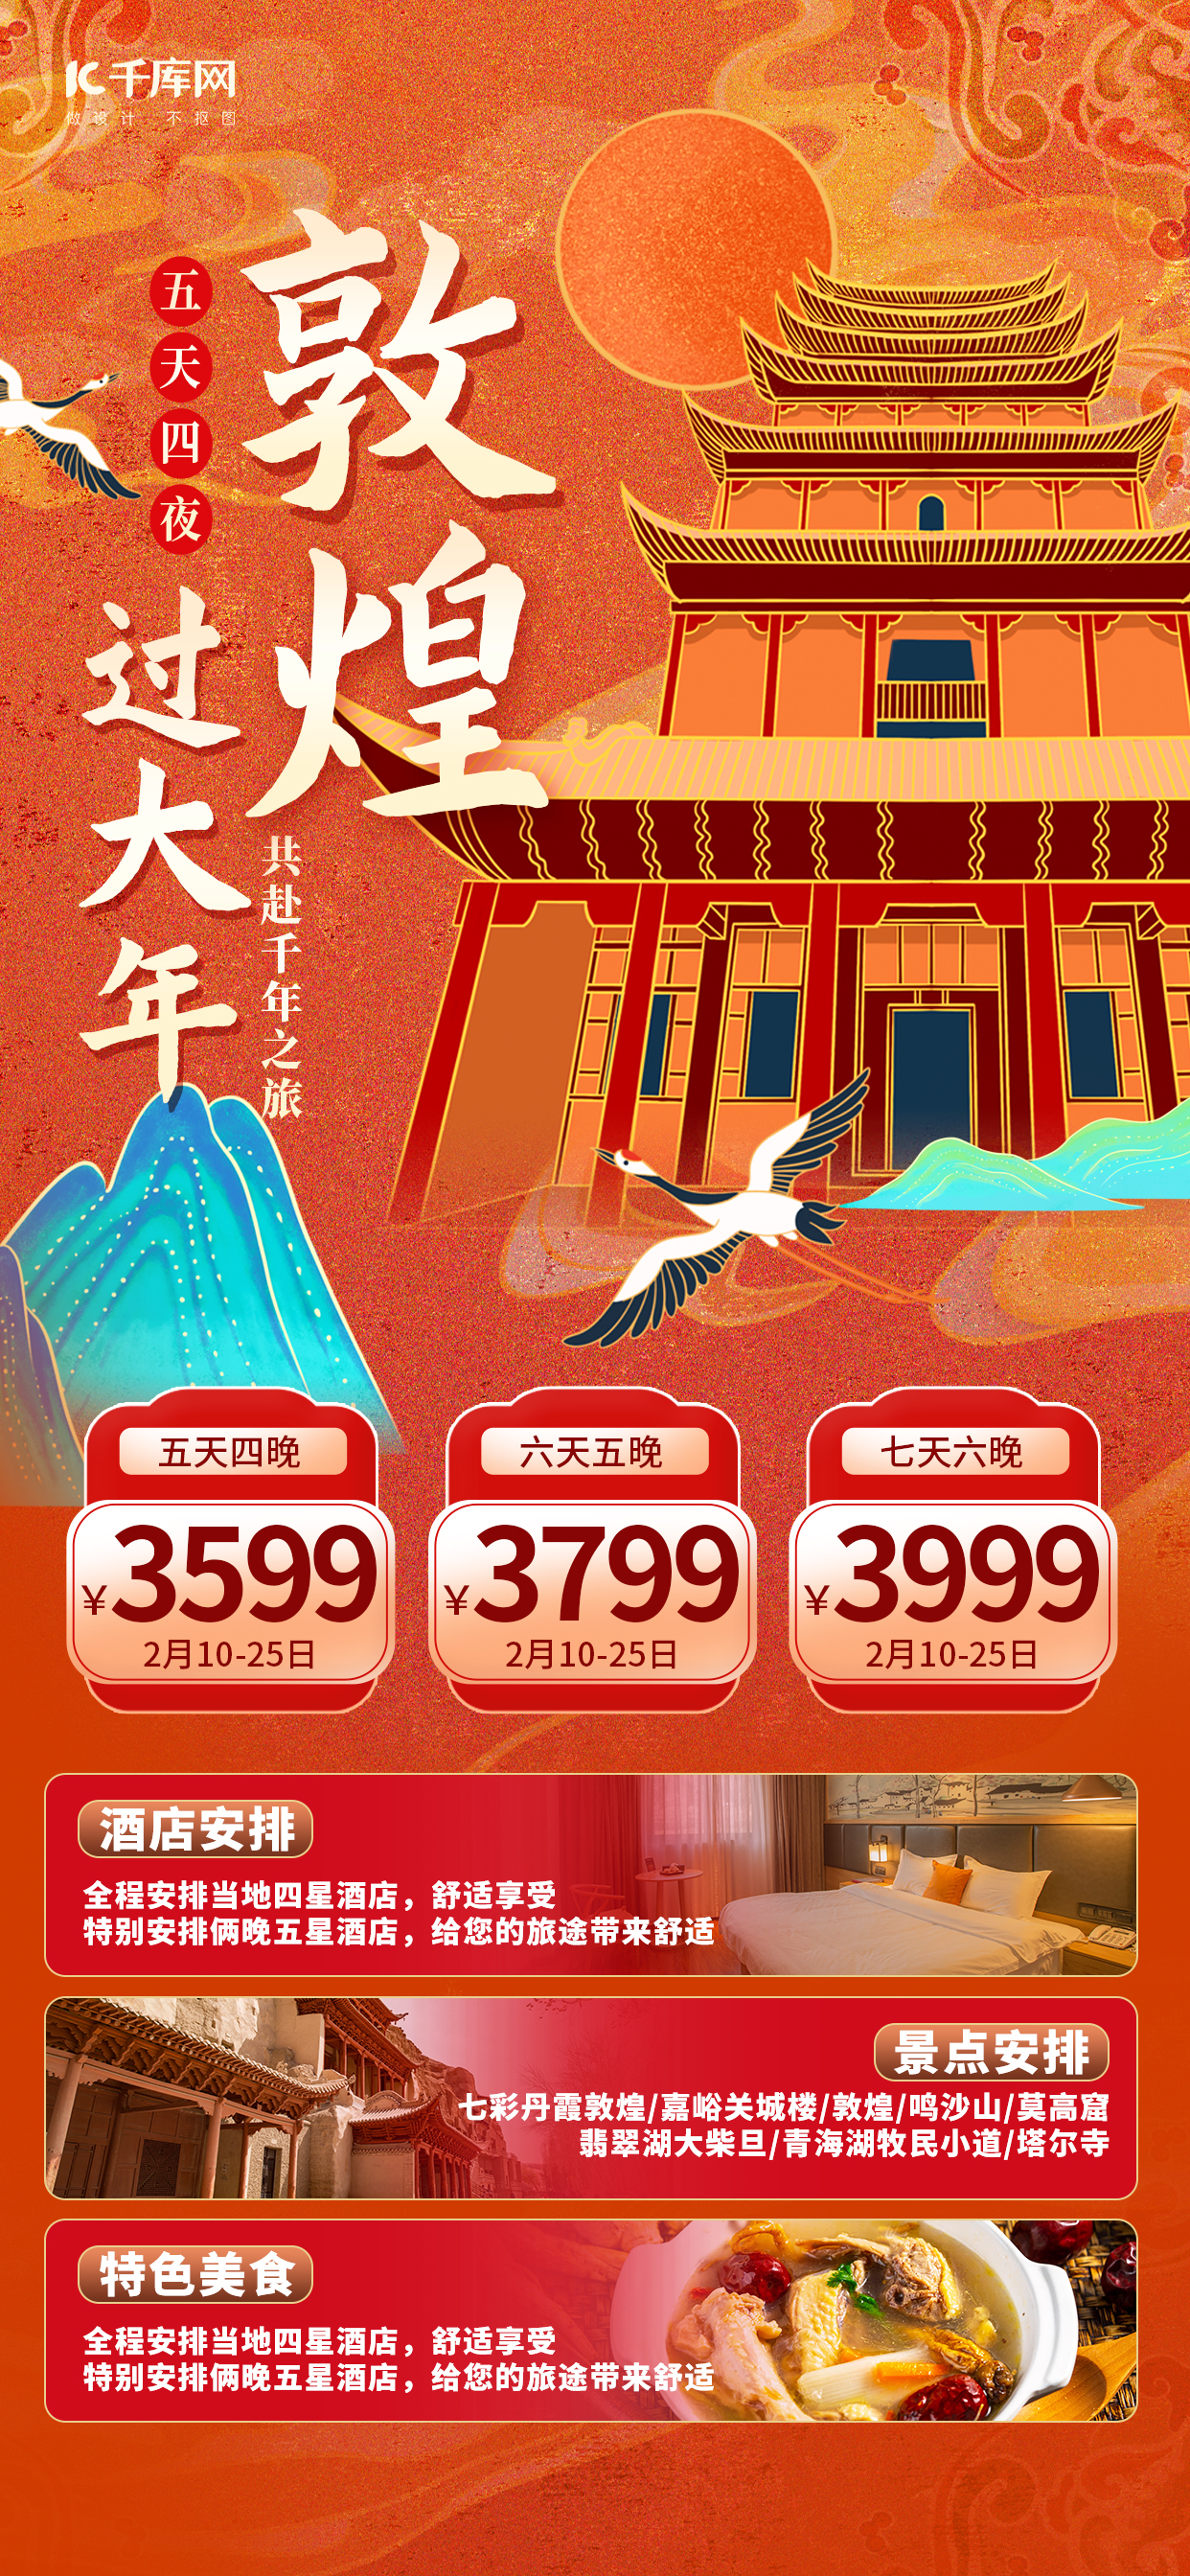 春节旅游活动宣传橙色国潮简约广告宣传海报图片